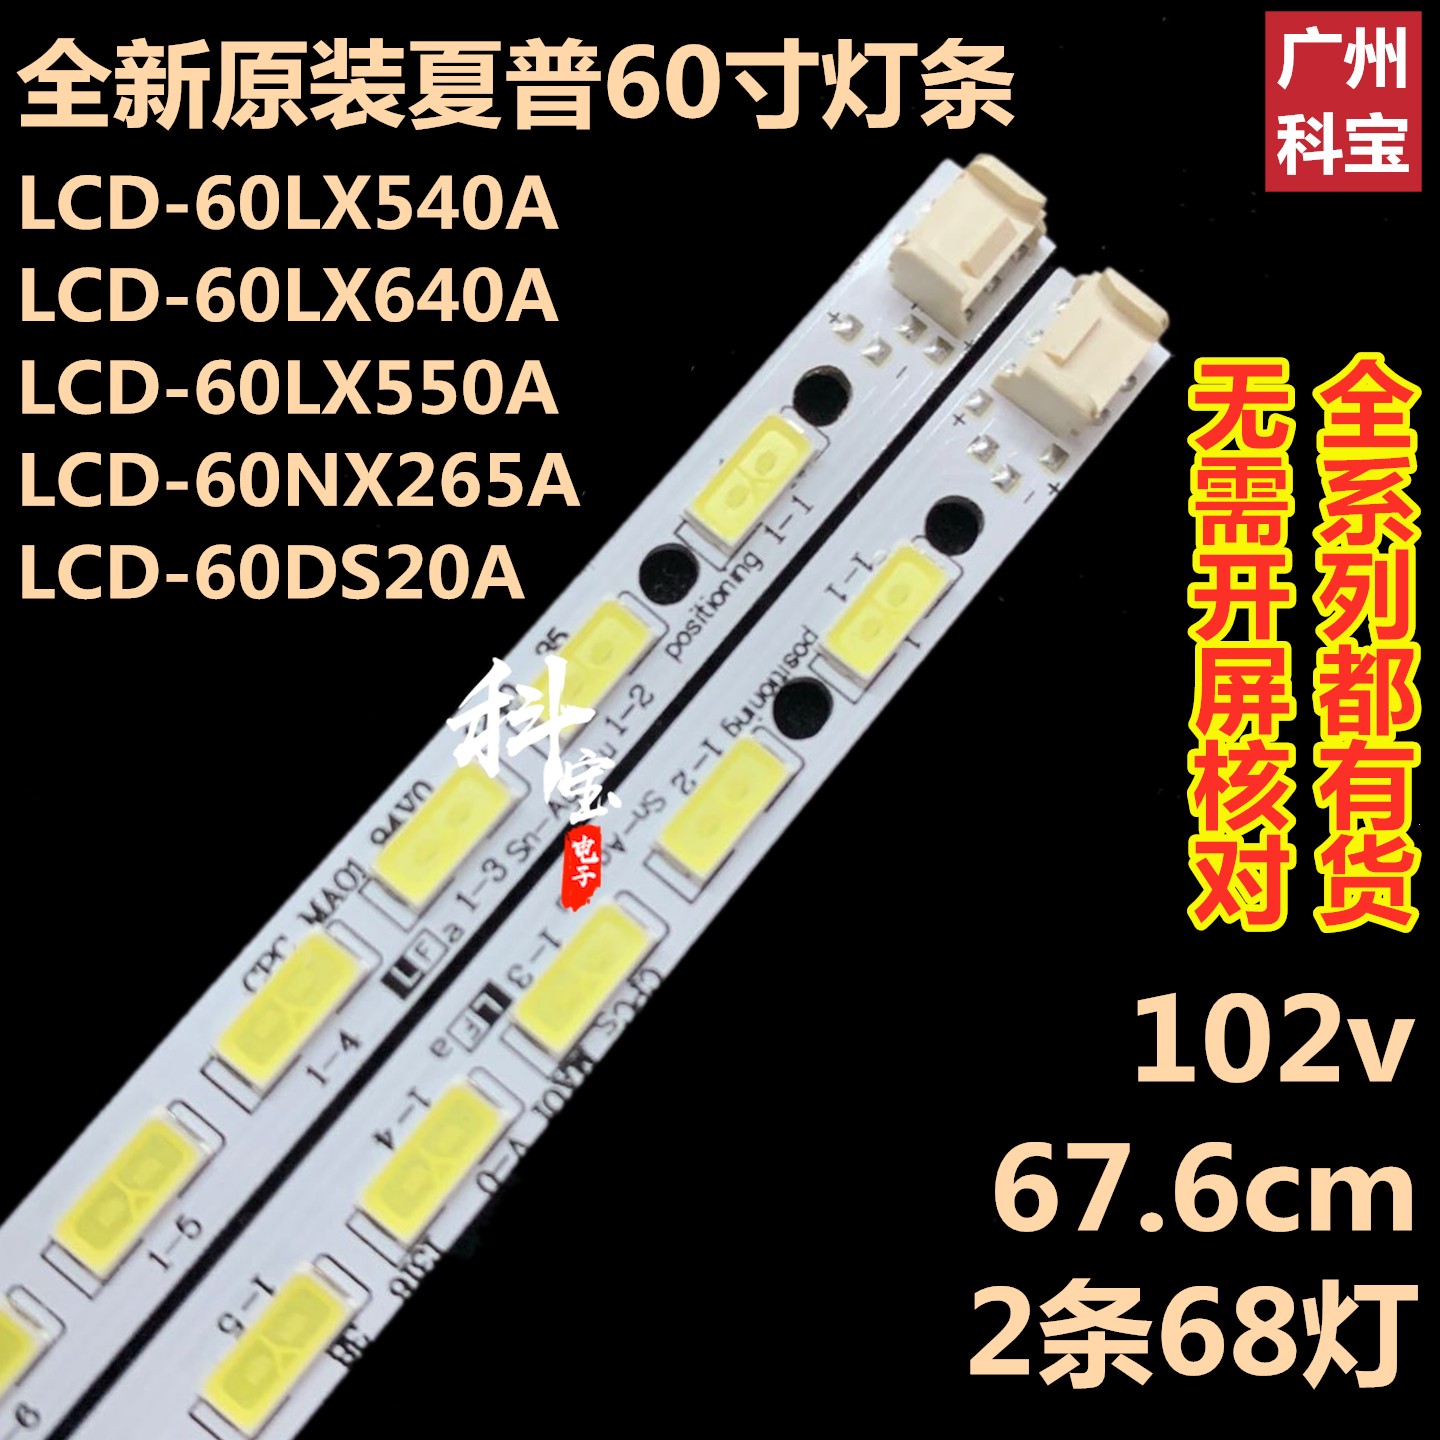 全新夏普LCD-60LX750A背光